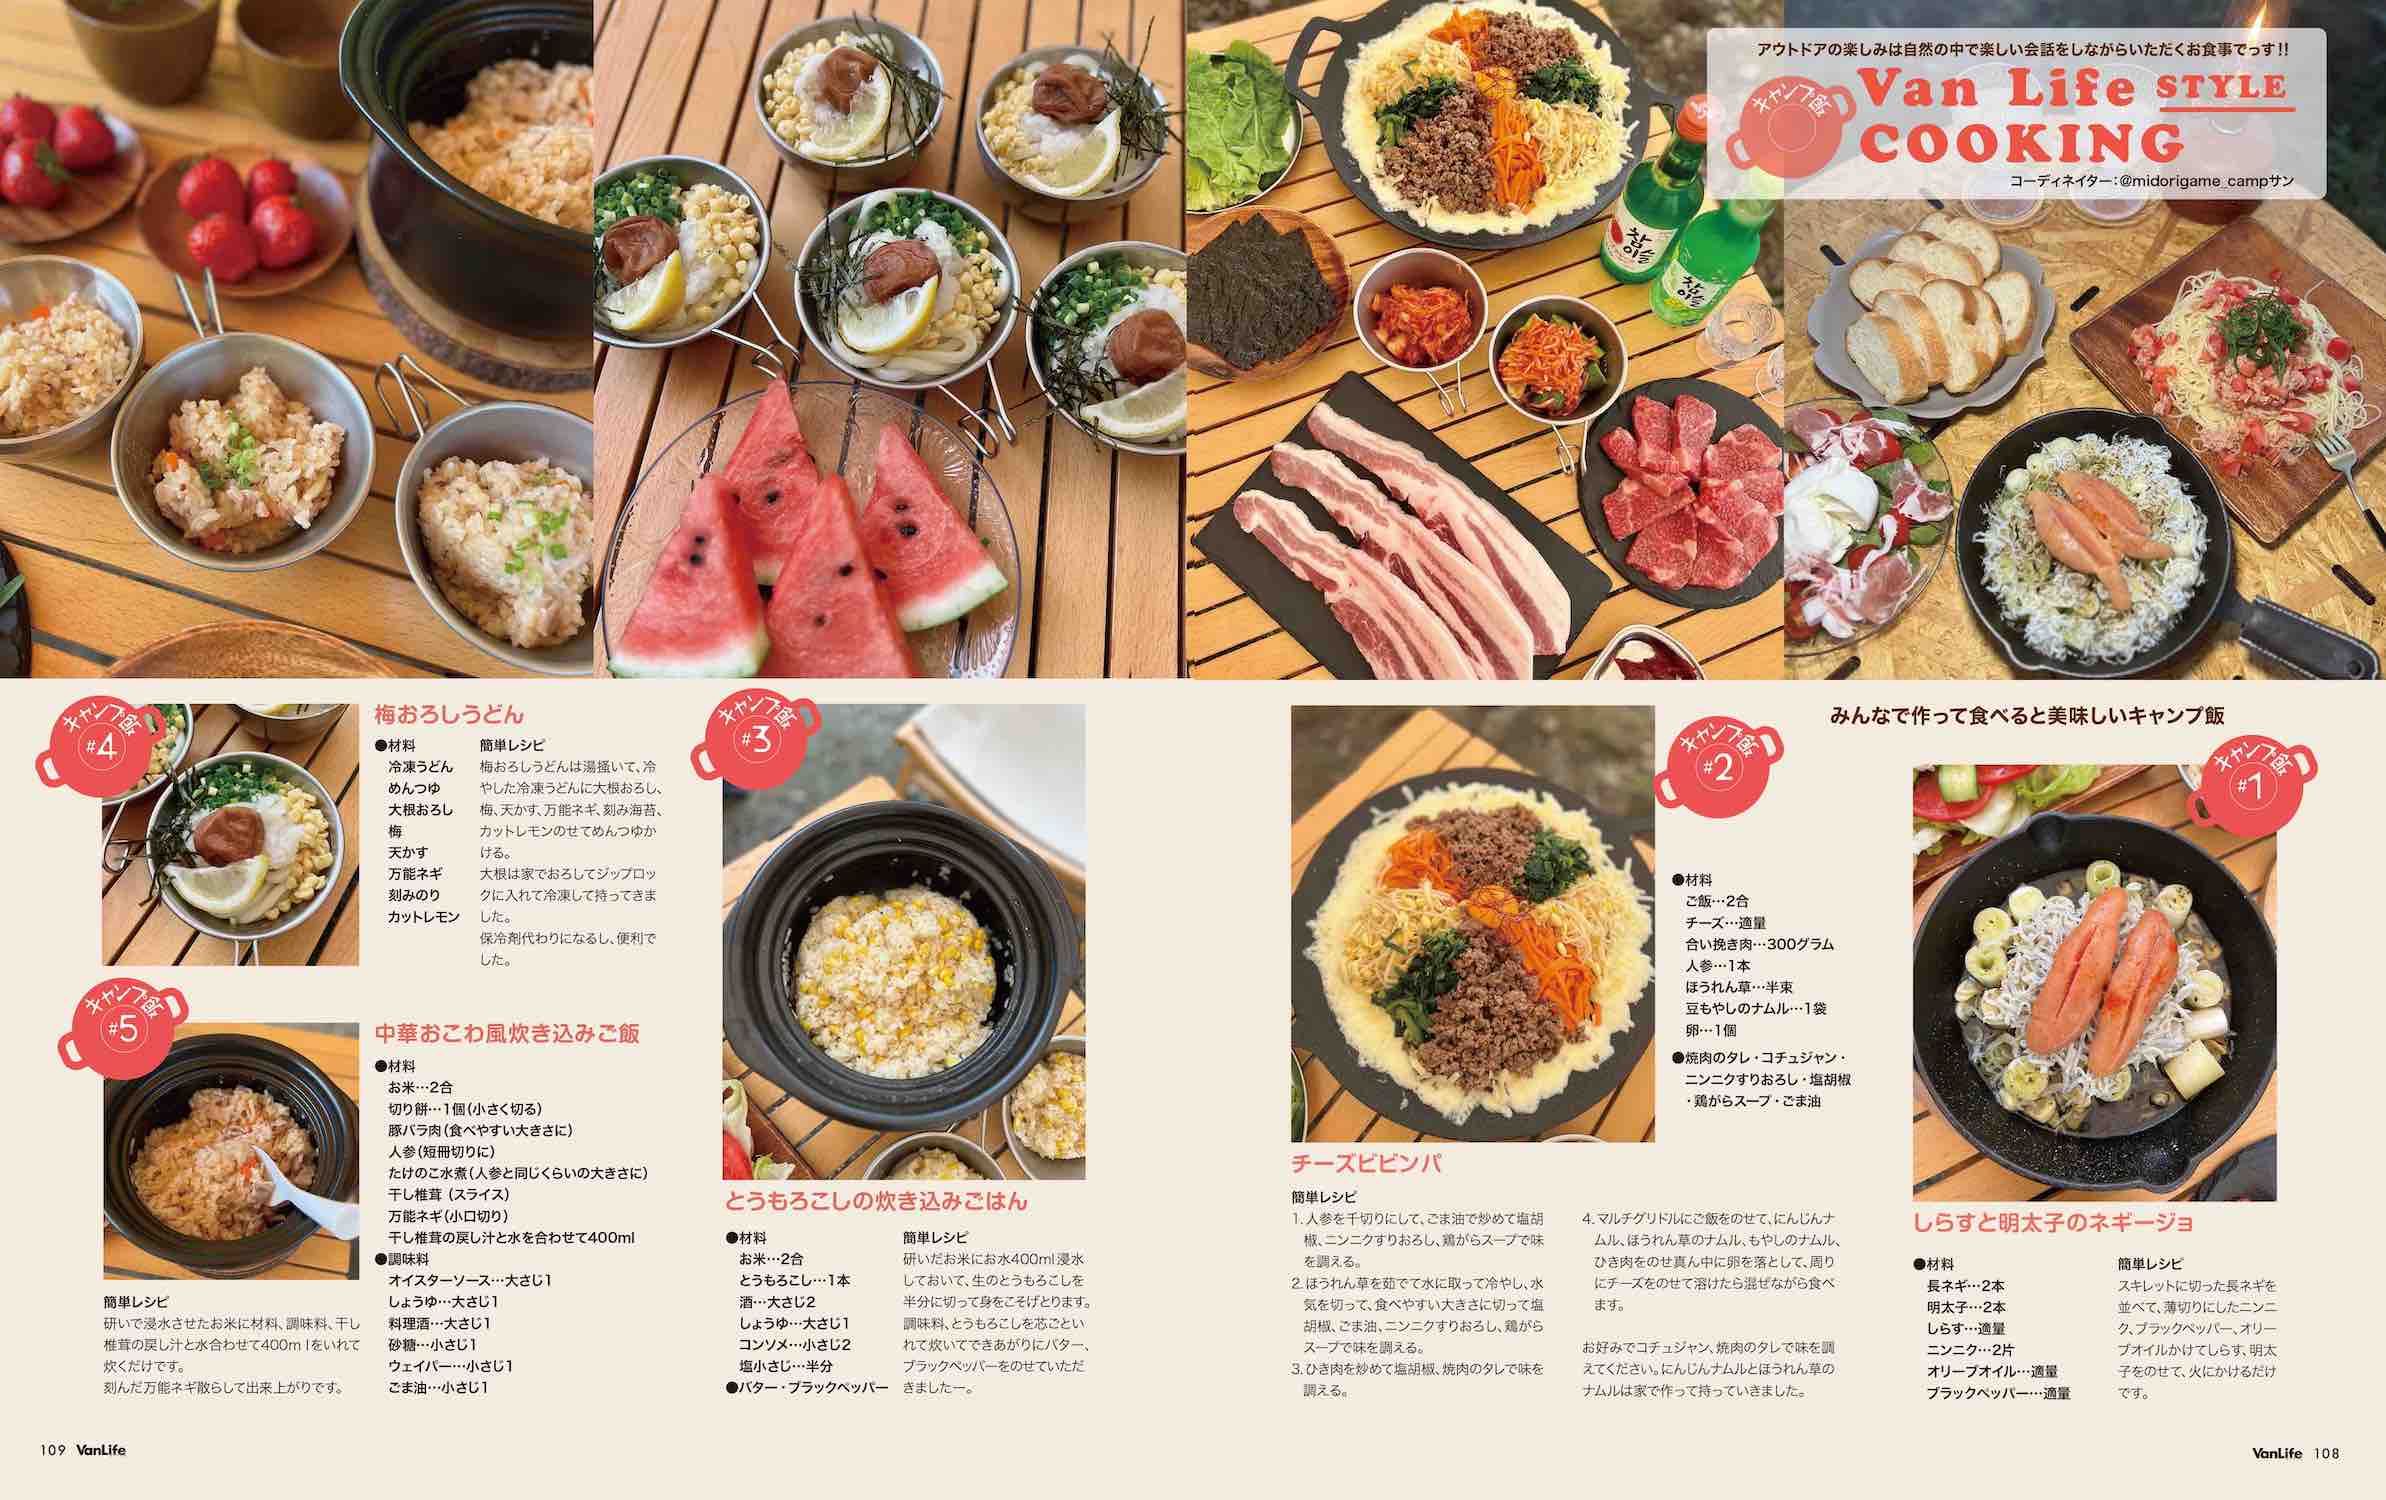 正規品の人気商品 VAN LIFE HOME と farm life 2冊販売 | ikebana 